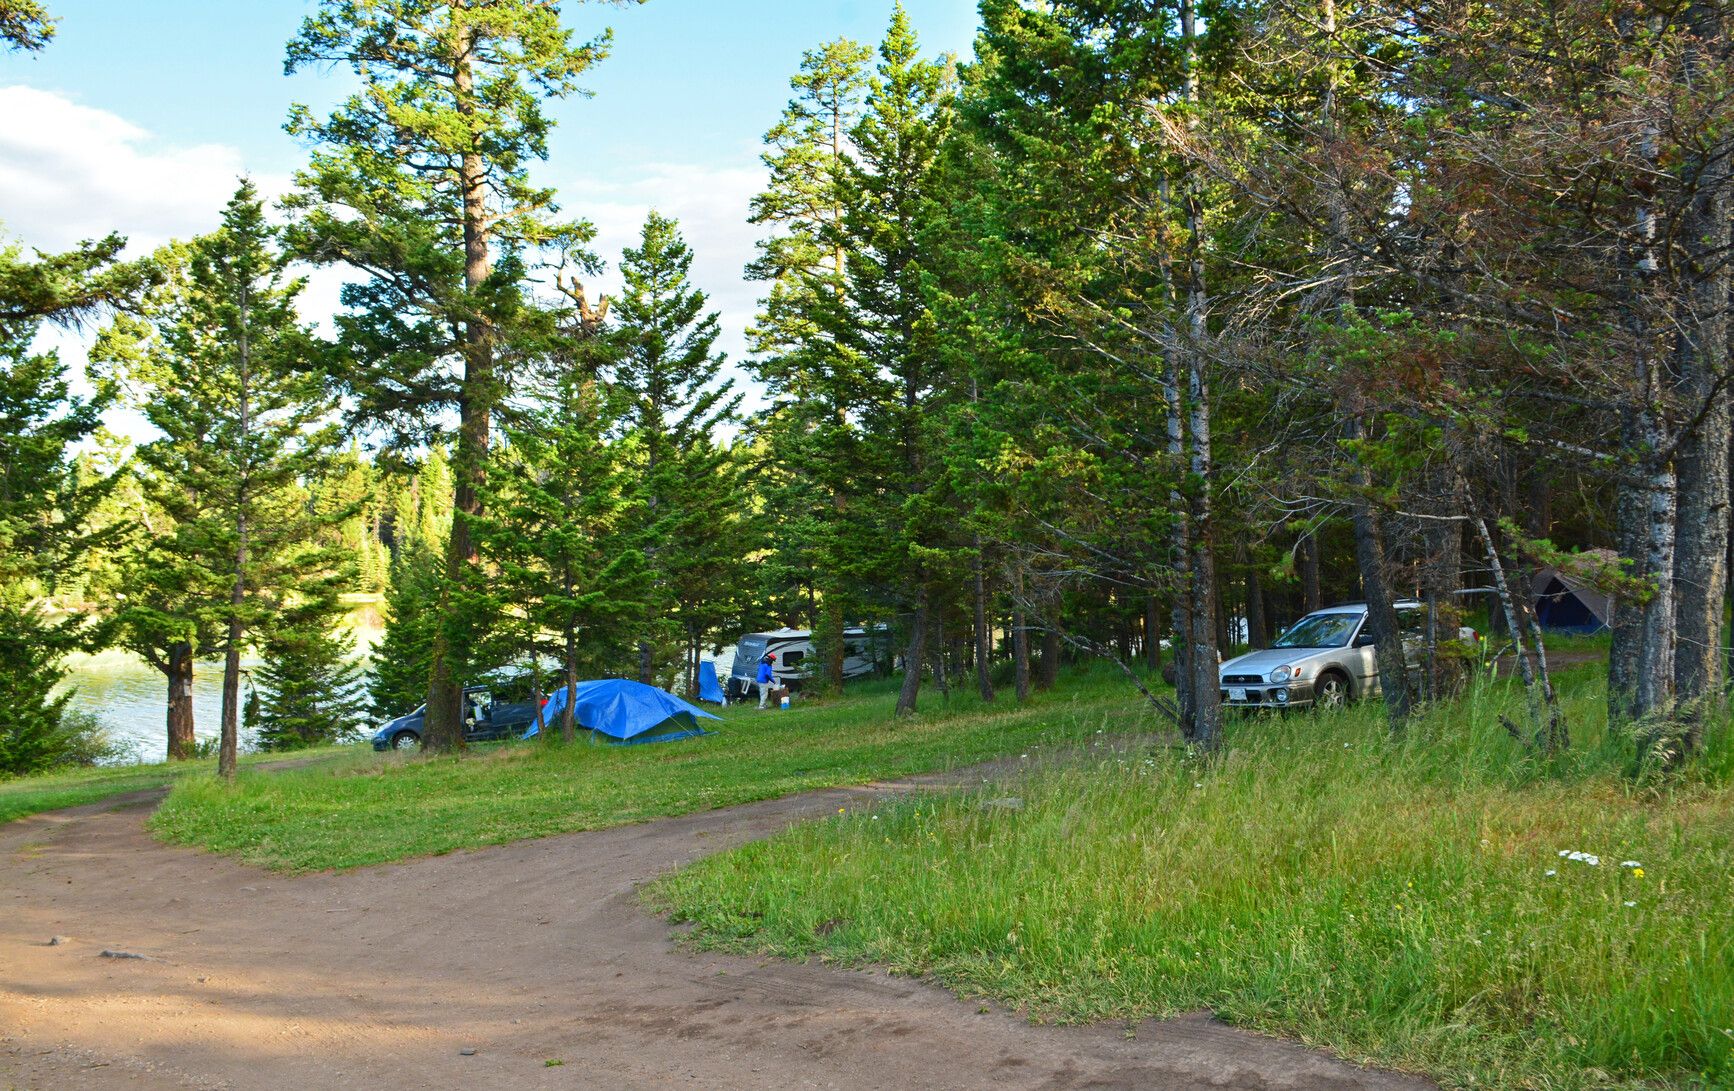 Campsites near the lake in Roche Lake Park.